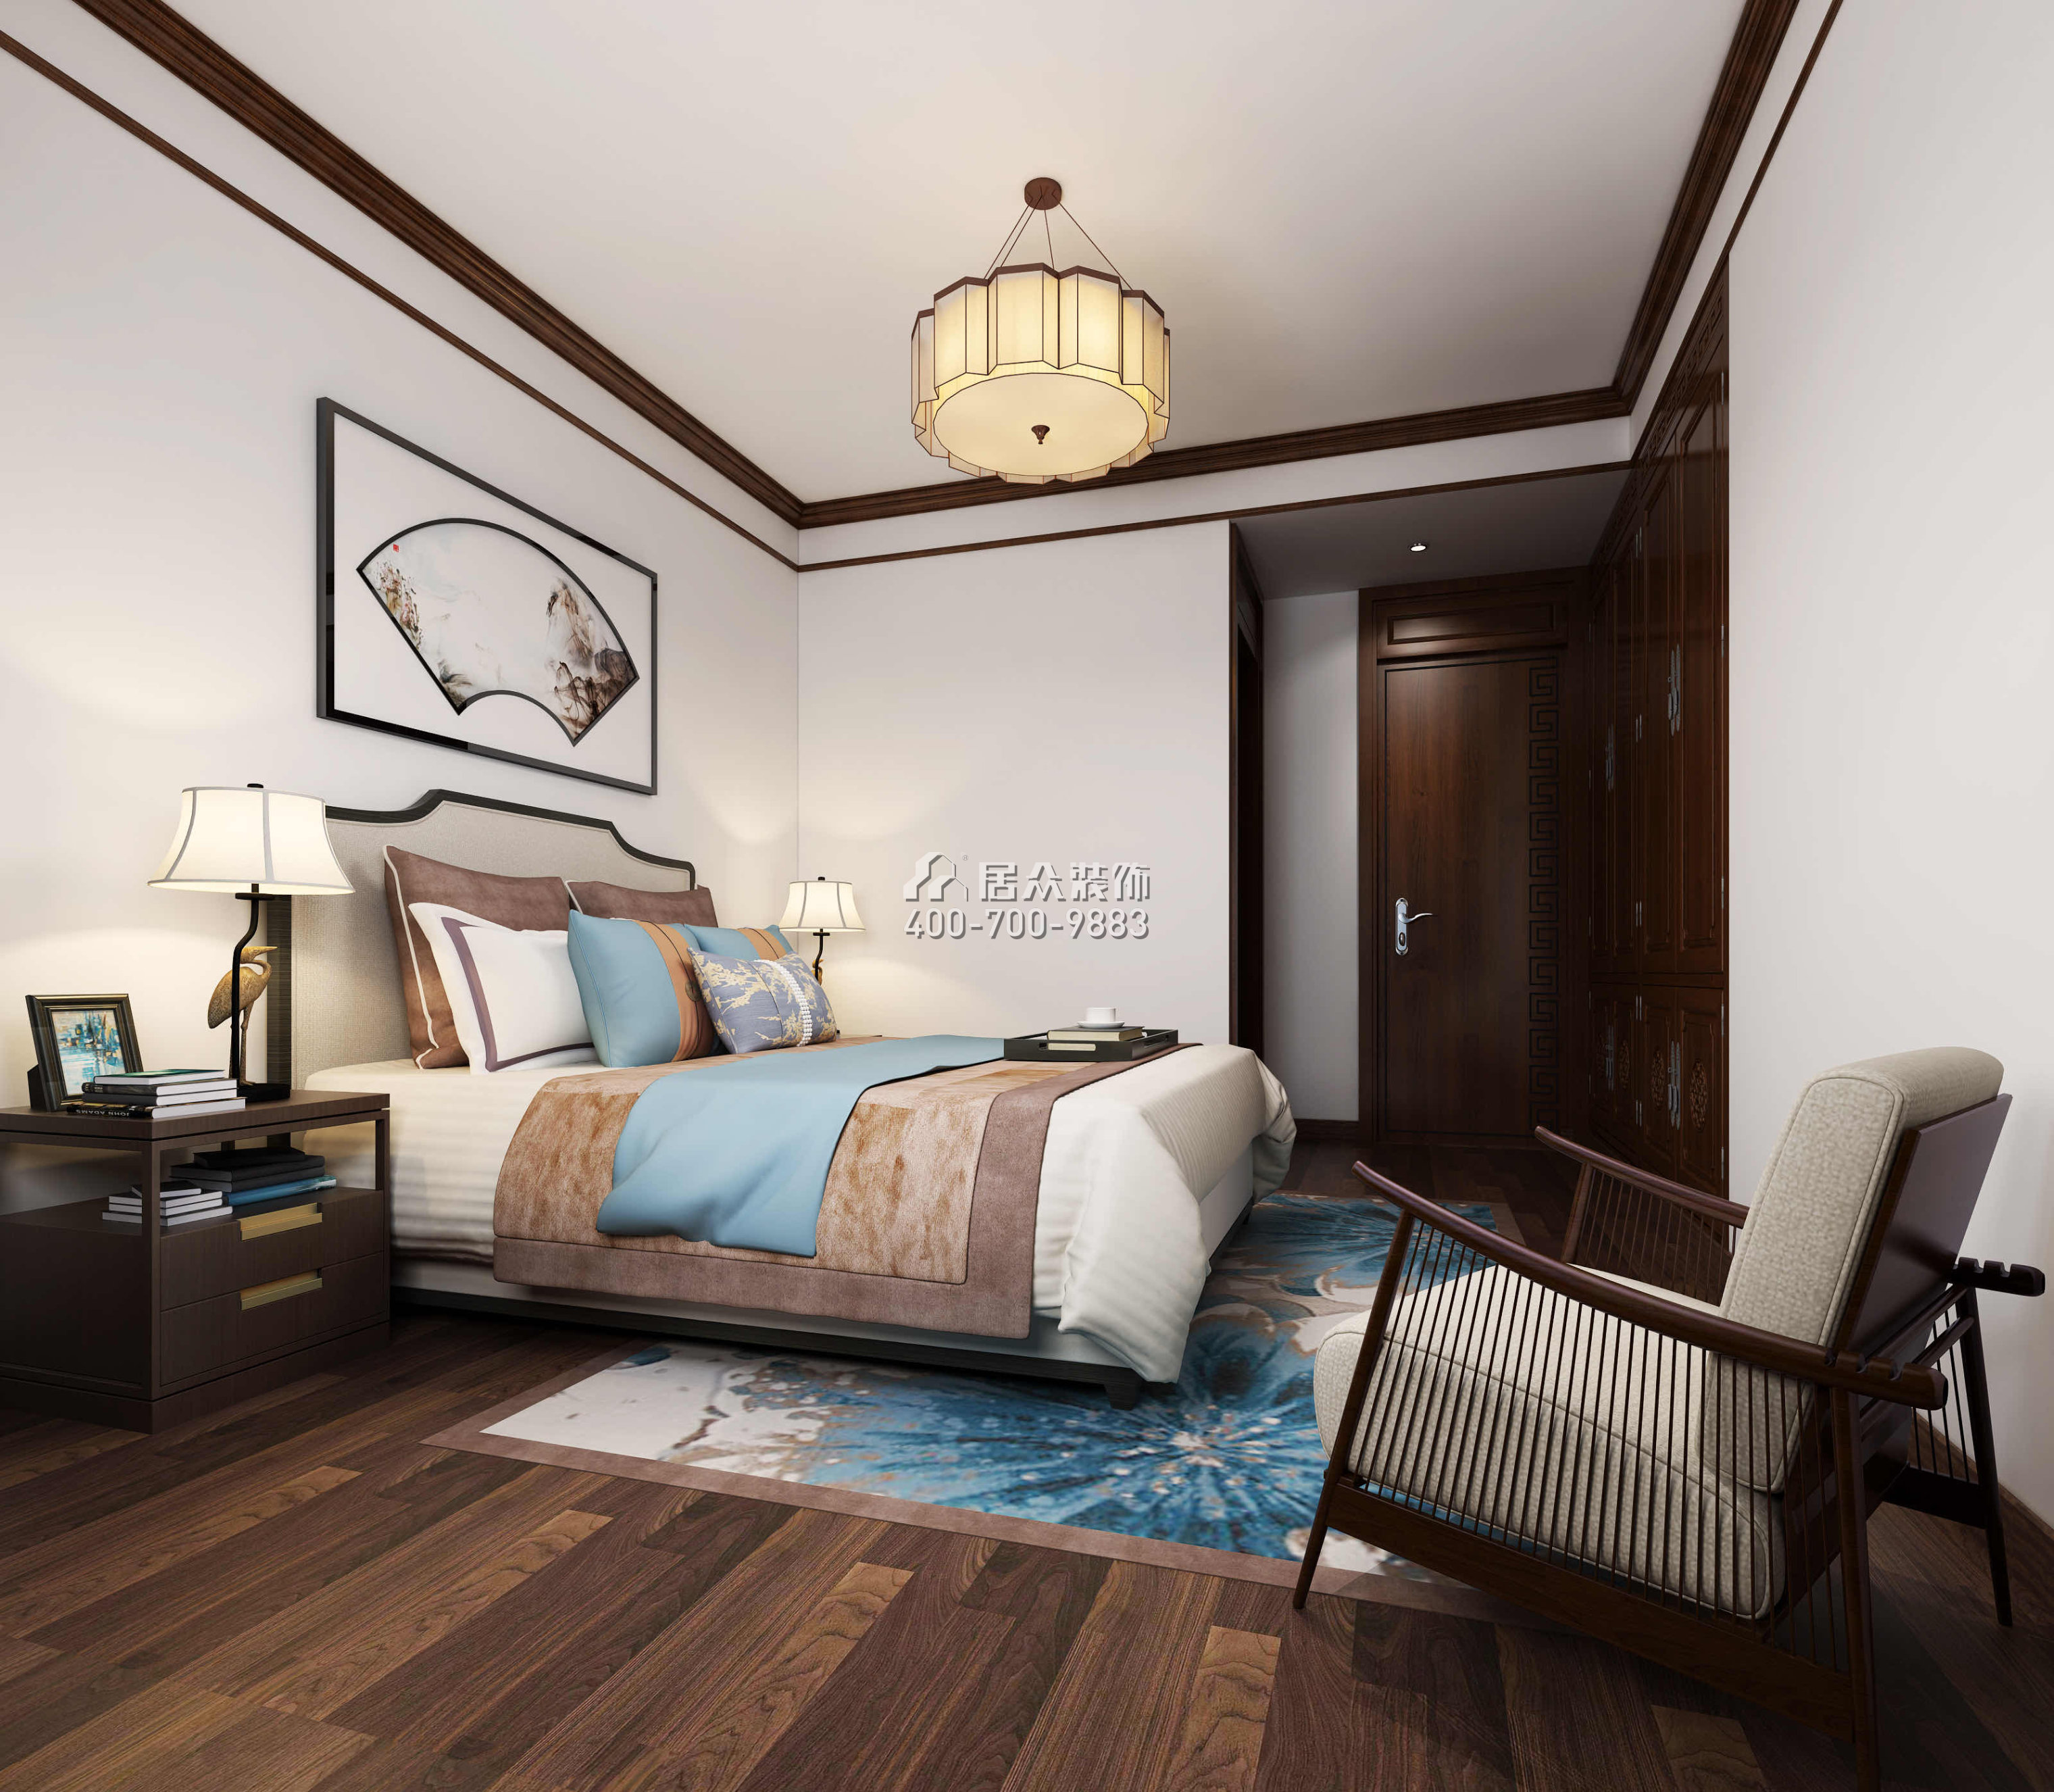 御景龙湖130平方米中式风格平层户型卧室装修效果图